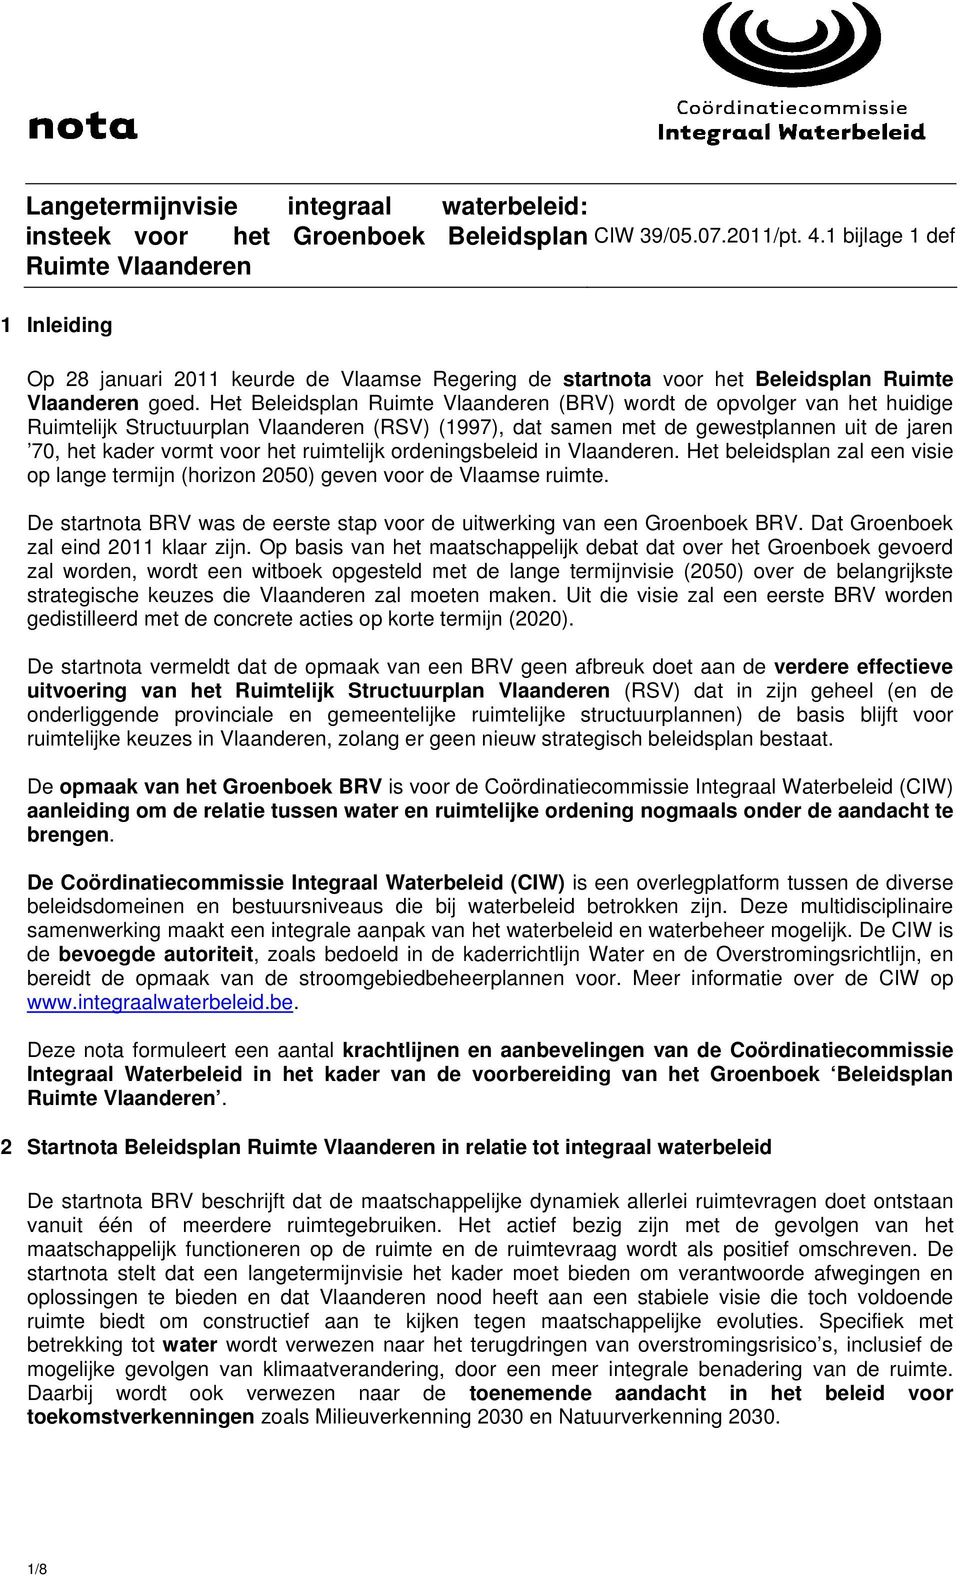 Het Beleidsplan Ruimte Vlaanderen (BRV) wordt de opvolger van het huidige Ruimtelijk Structuurplan Vlaanderen (RSV) (1997), dat samen met de gewestplannen uit de jaren 70, het kader vormt voor het